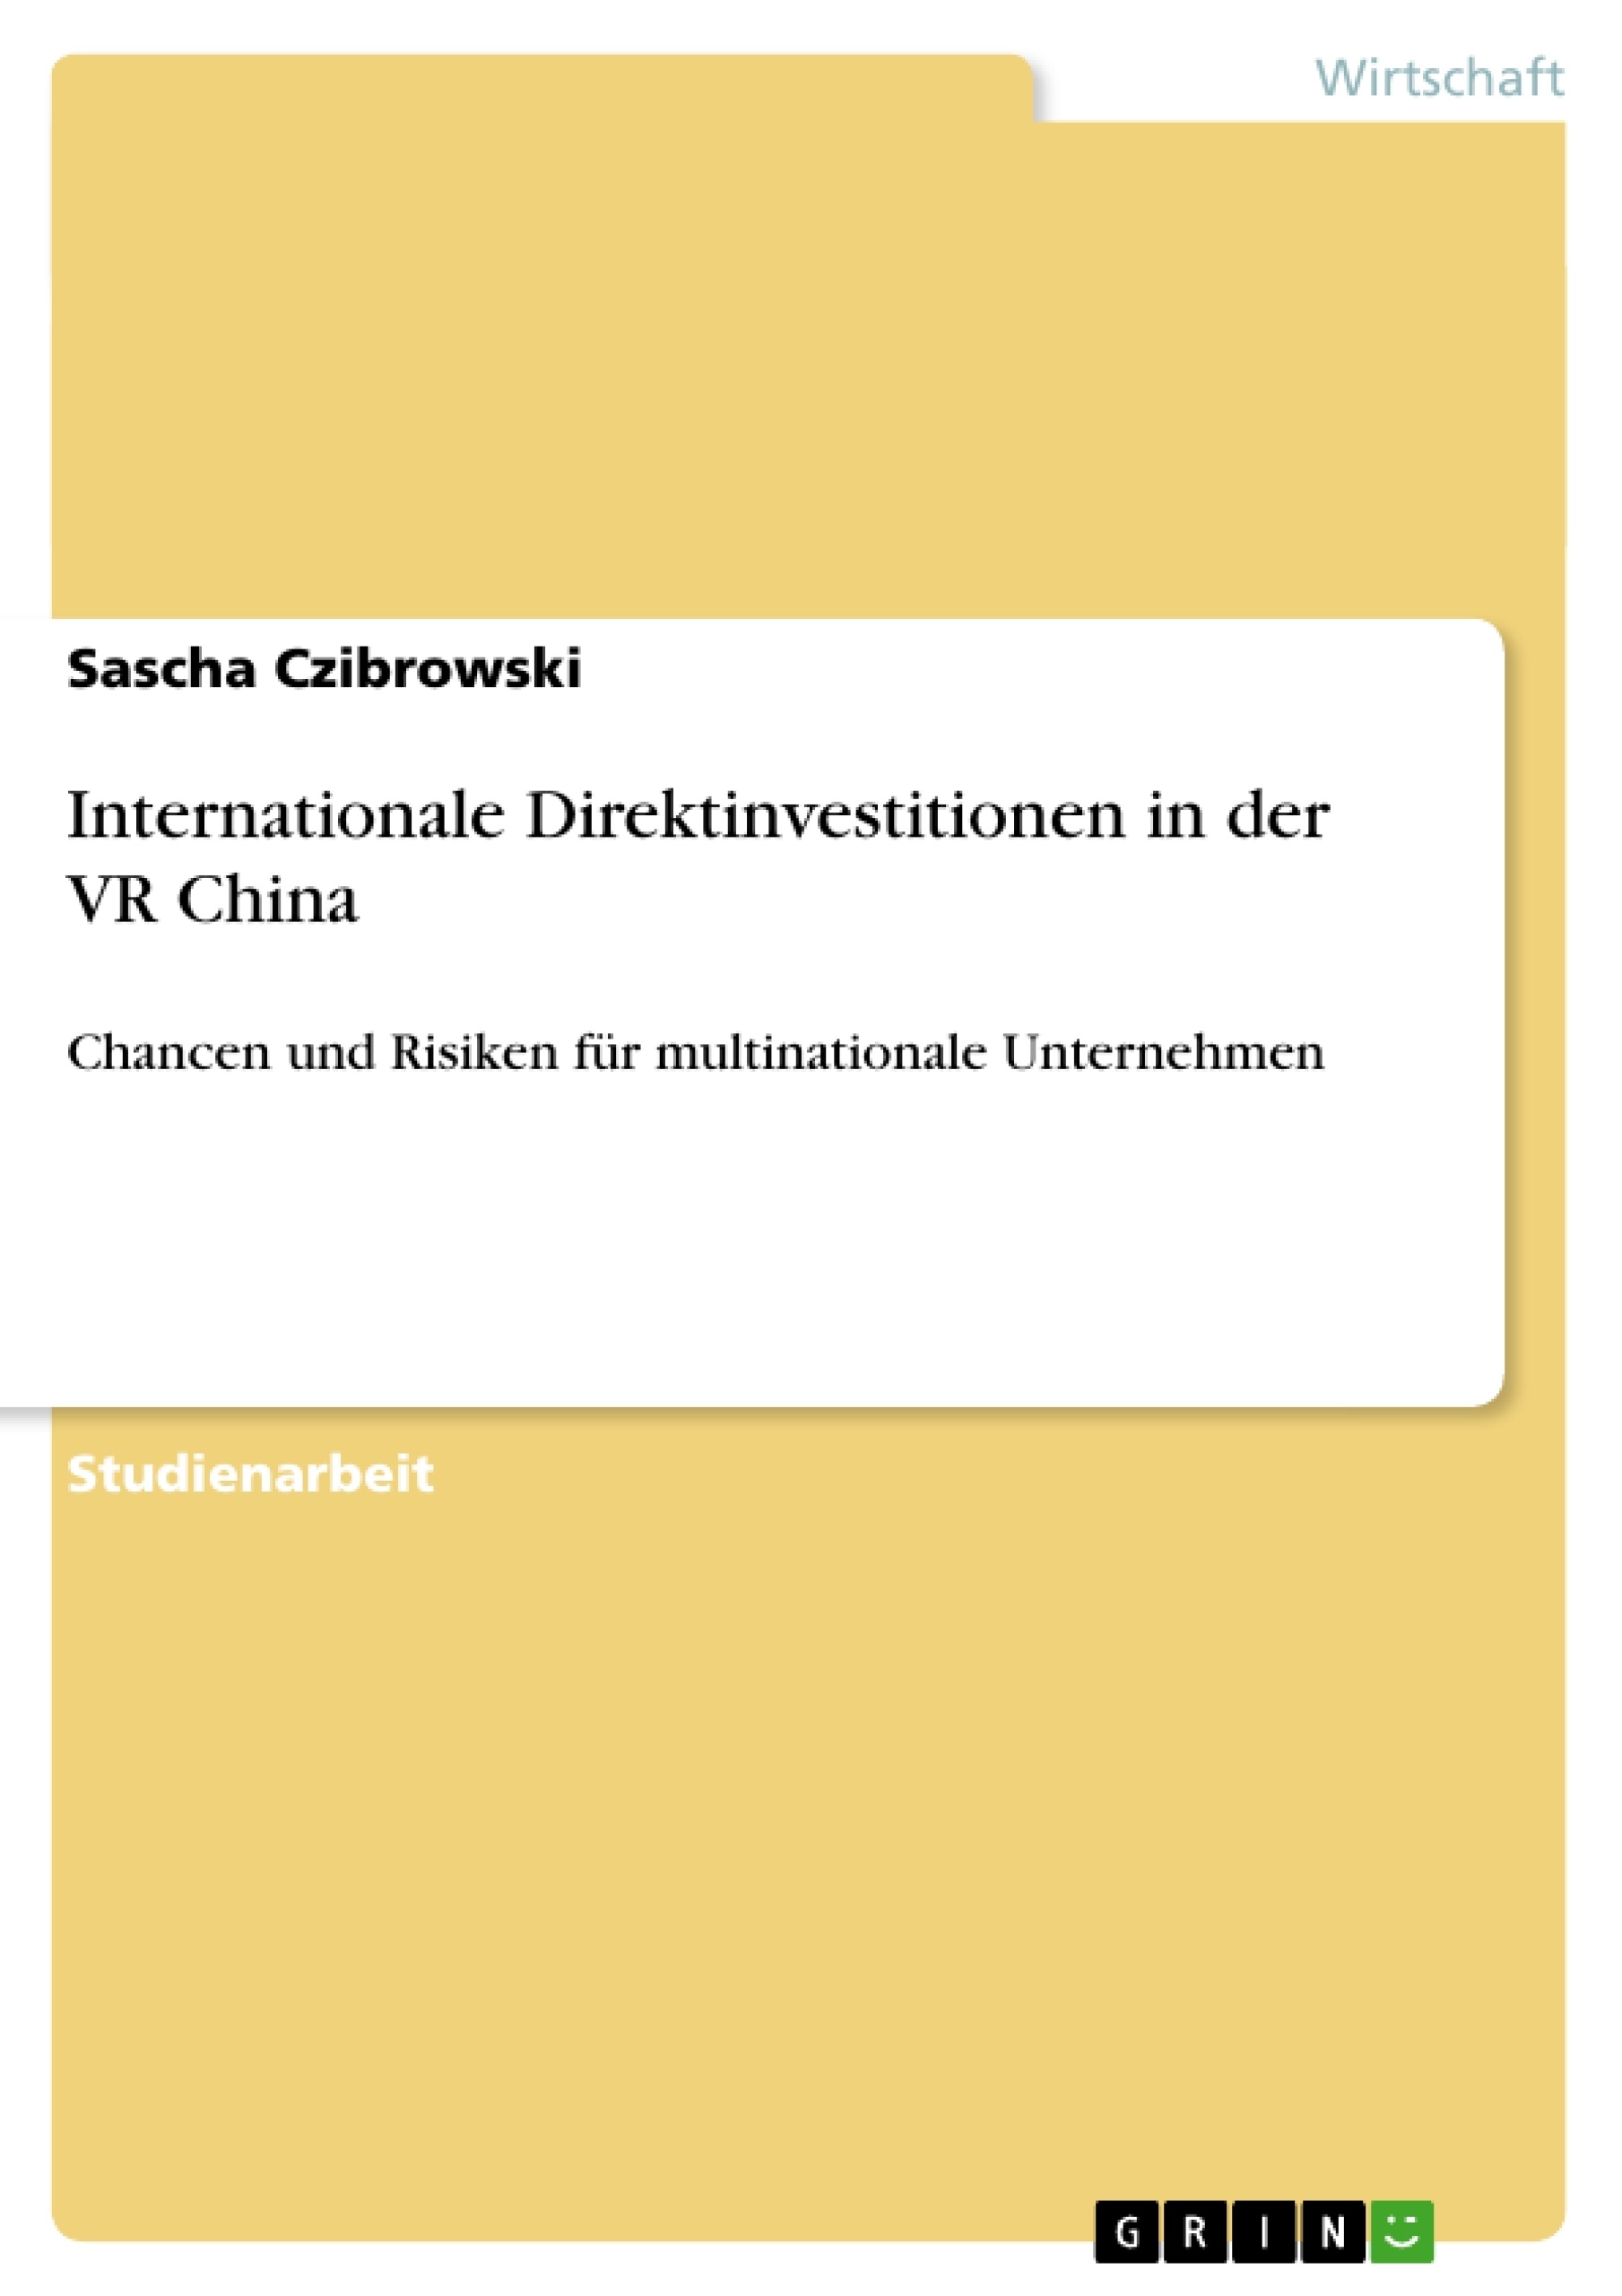 Título: Internationale Direktinvestitionen in der VR China